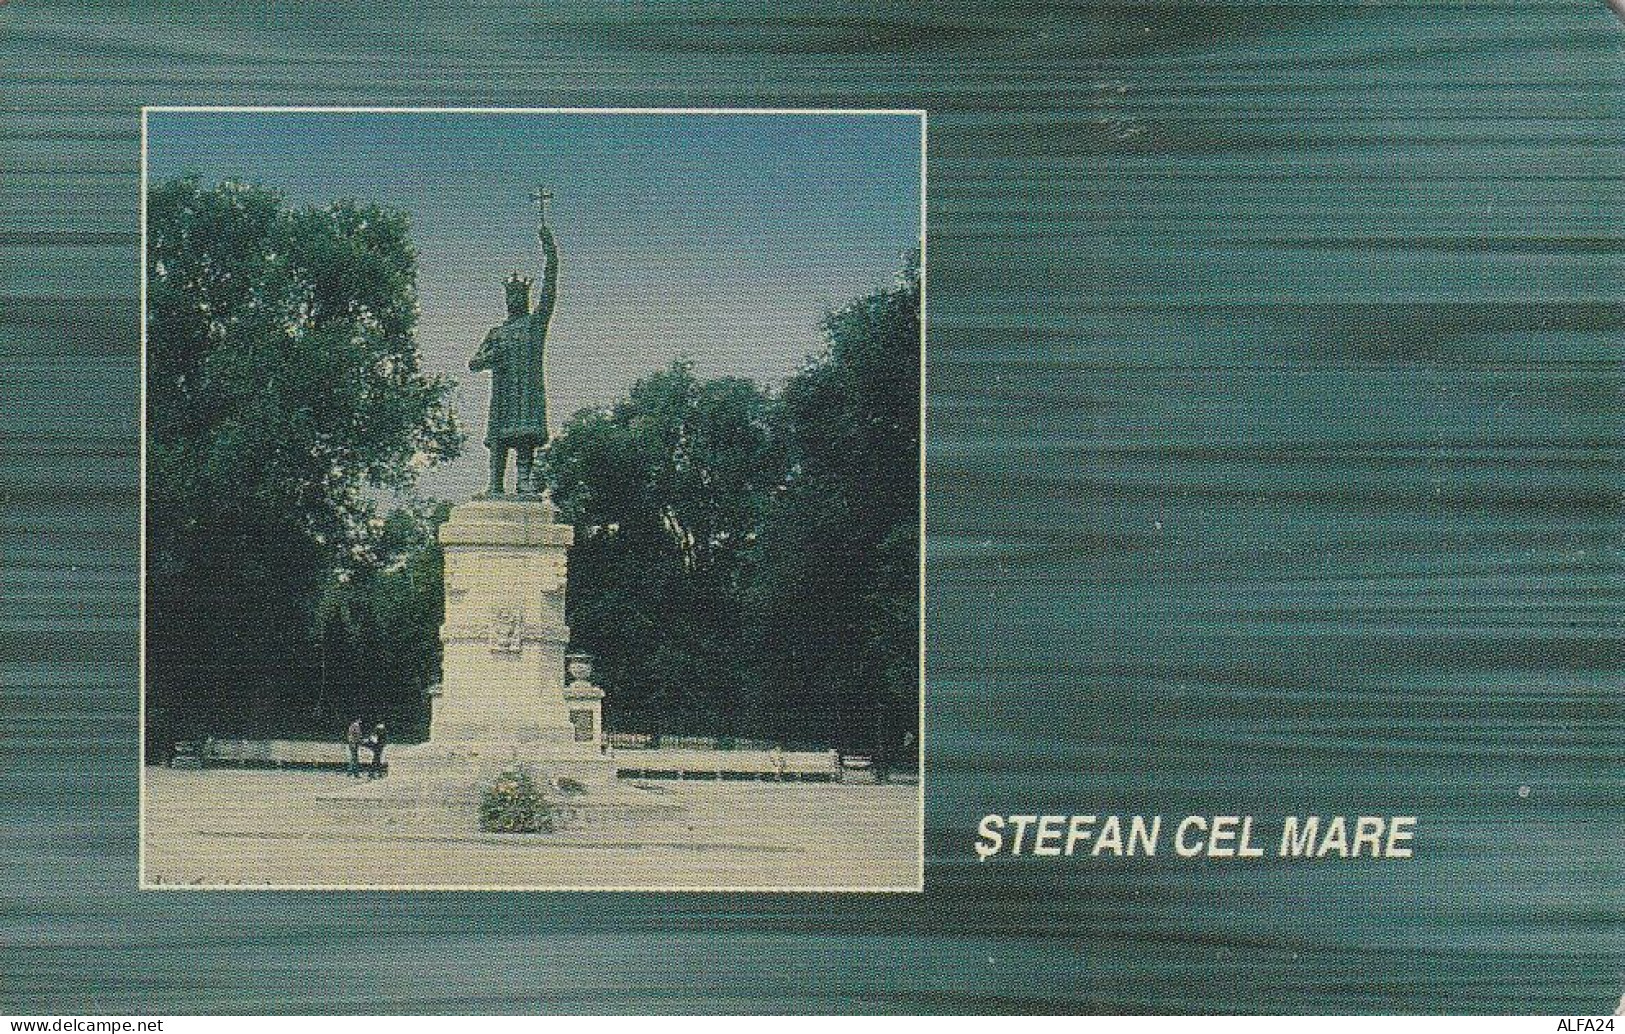 PHONE CARD MOLDAVIA  (E83.38.5 - Moldova